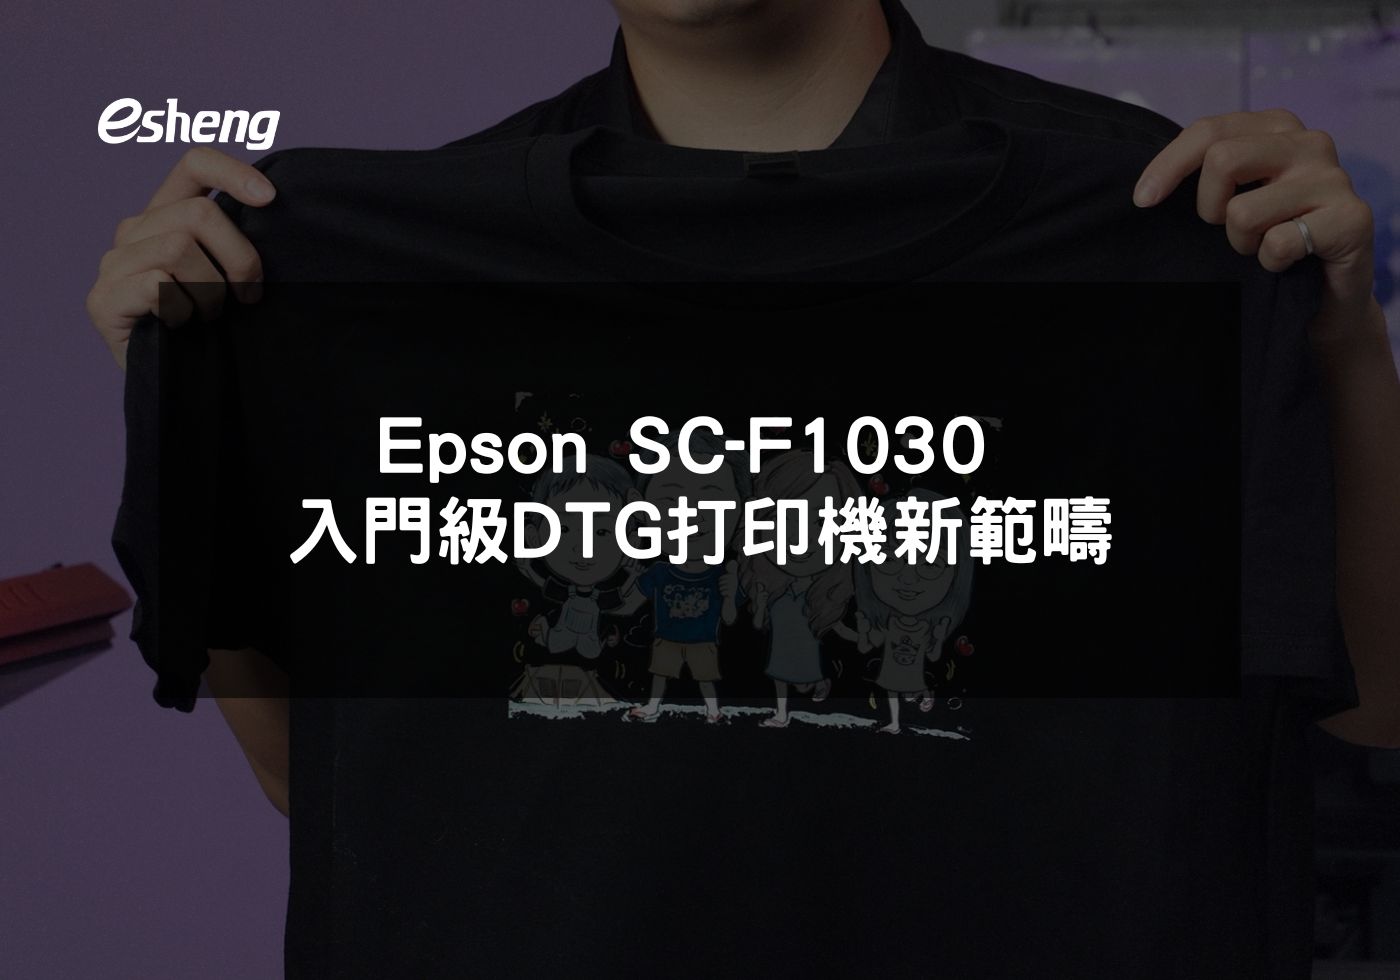 您目前正在查看 Epson SC-F1030 入門級DTG打印機新範疇